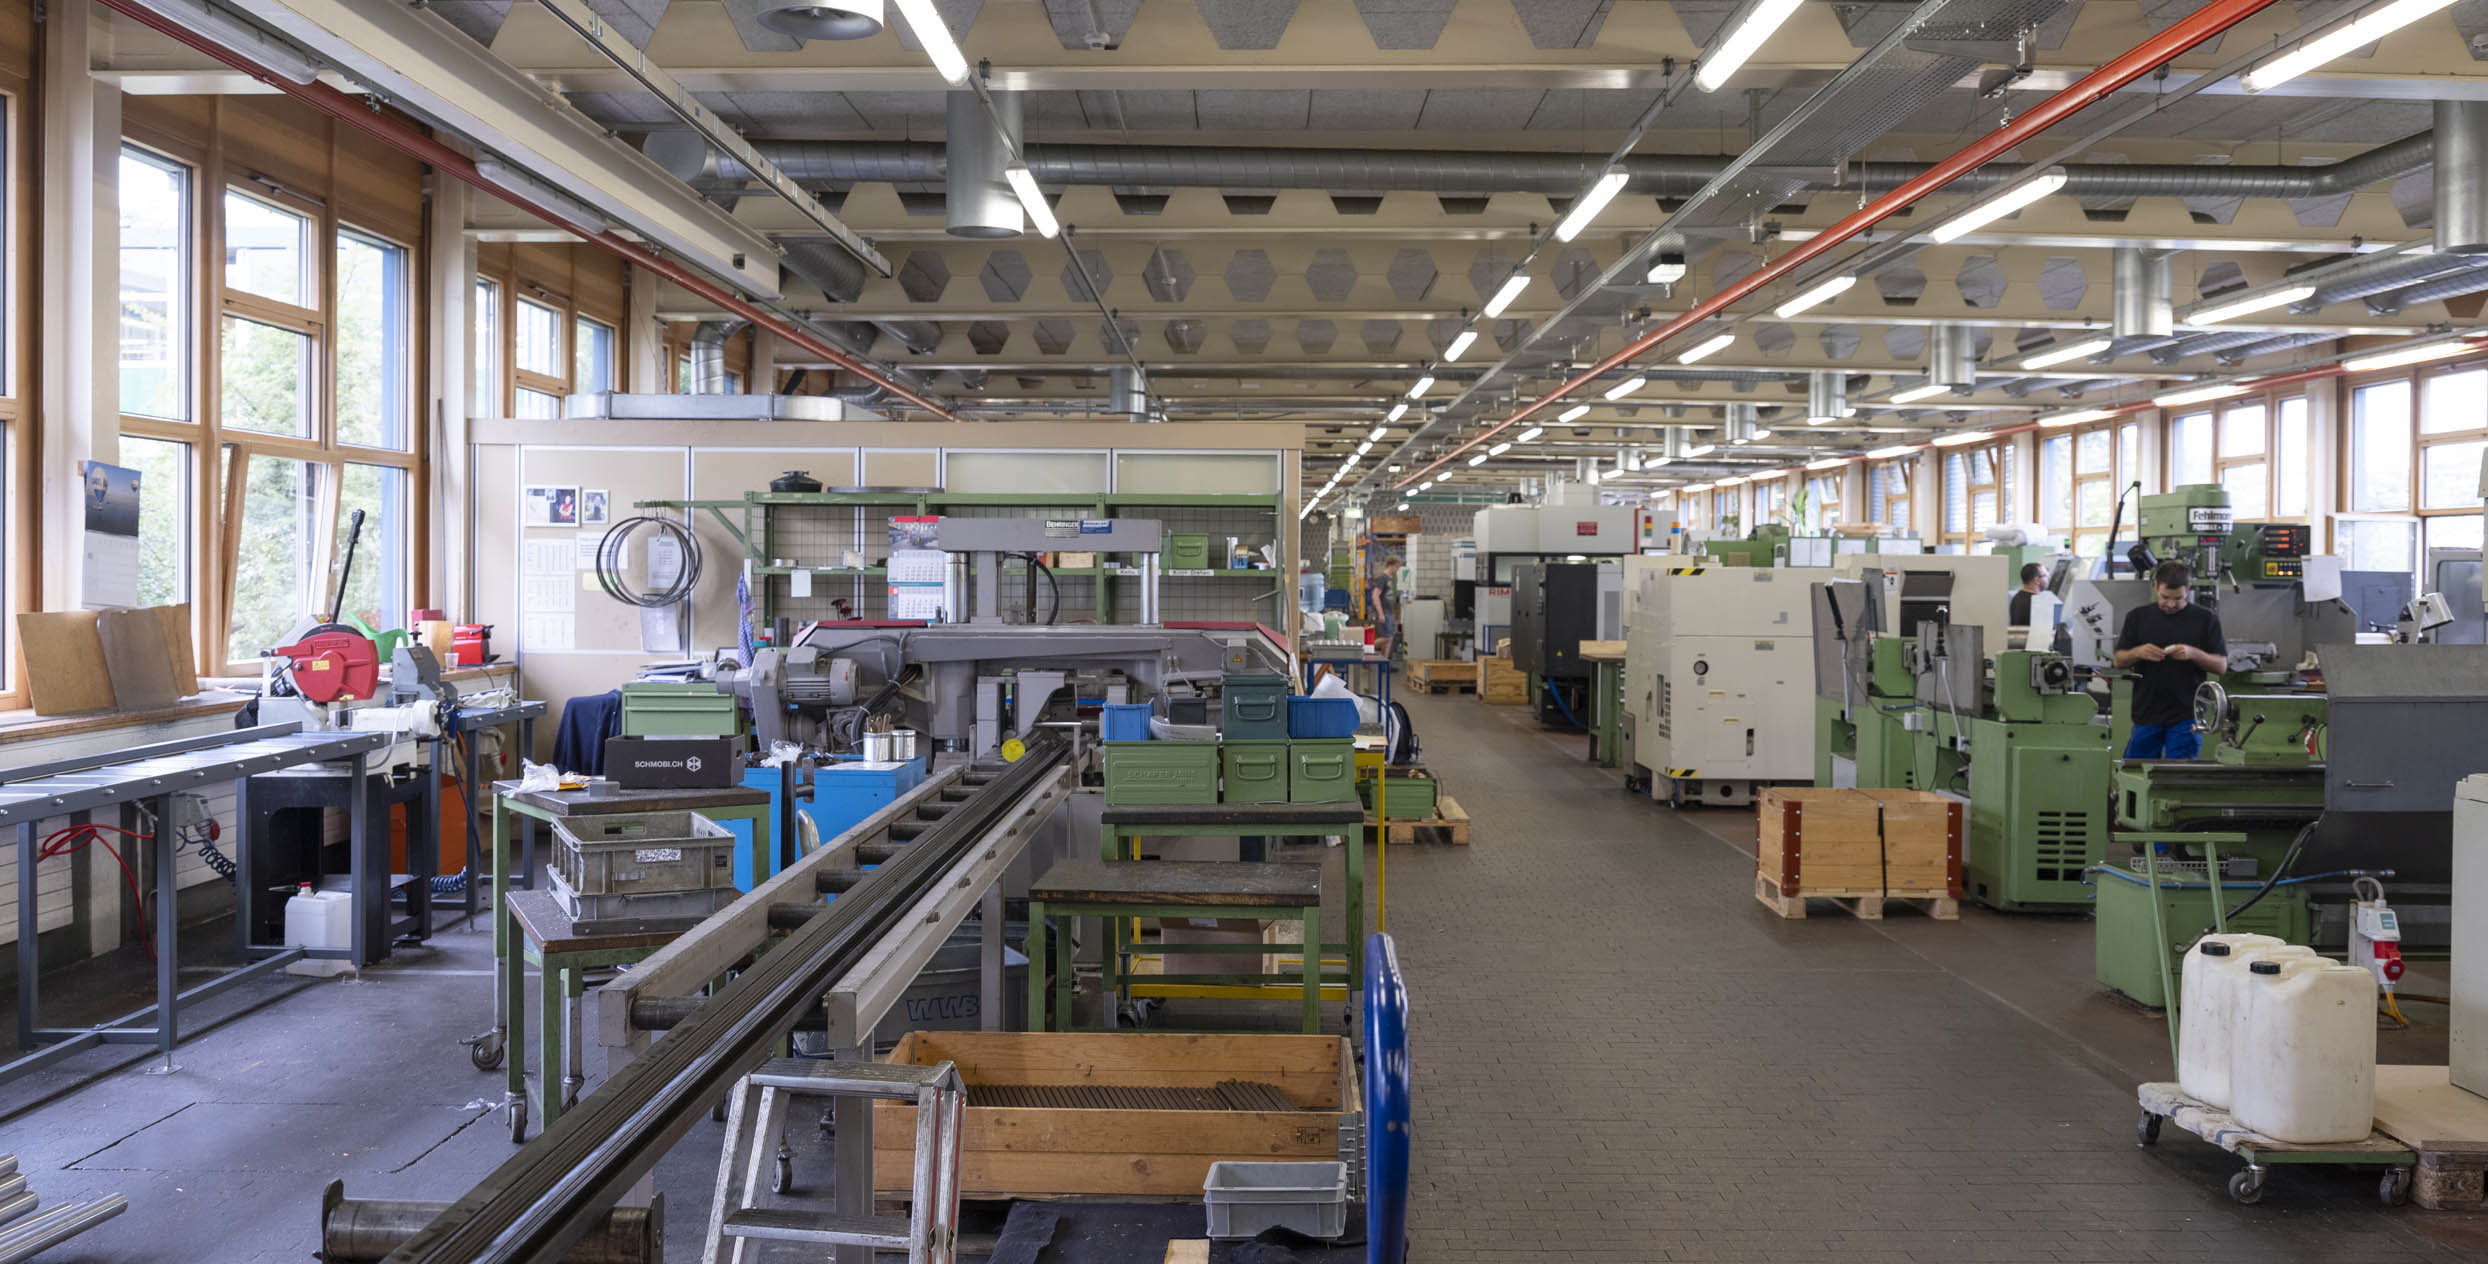 Die Werkstatt der Mechanik: Ein grosser Raum mit vielen Maschinen und einigen Mitarbeitenden